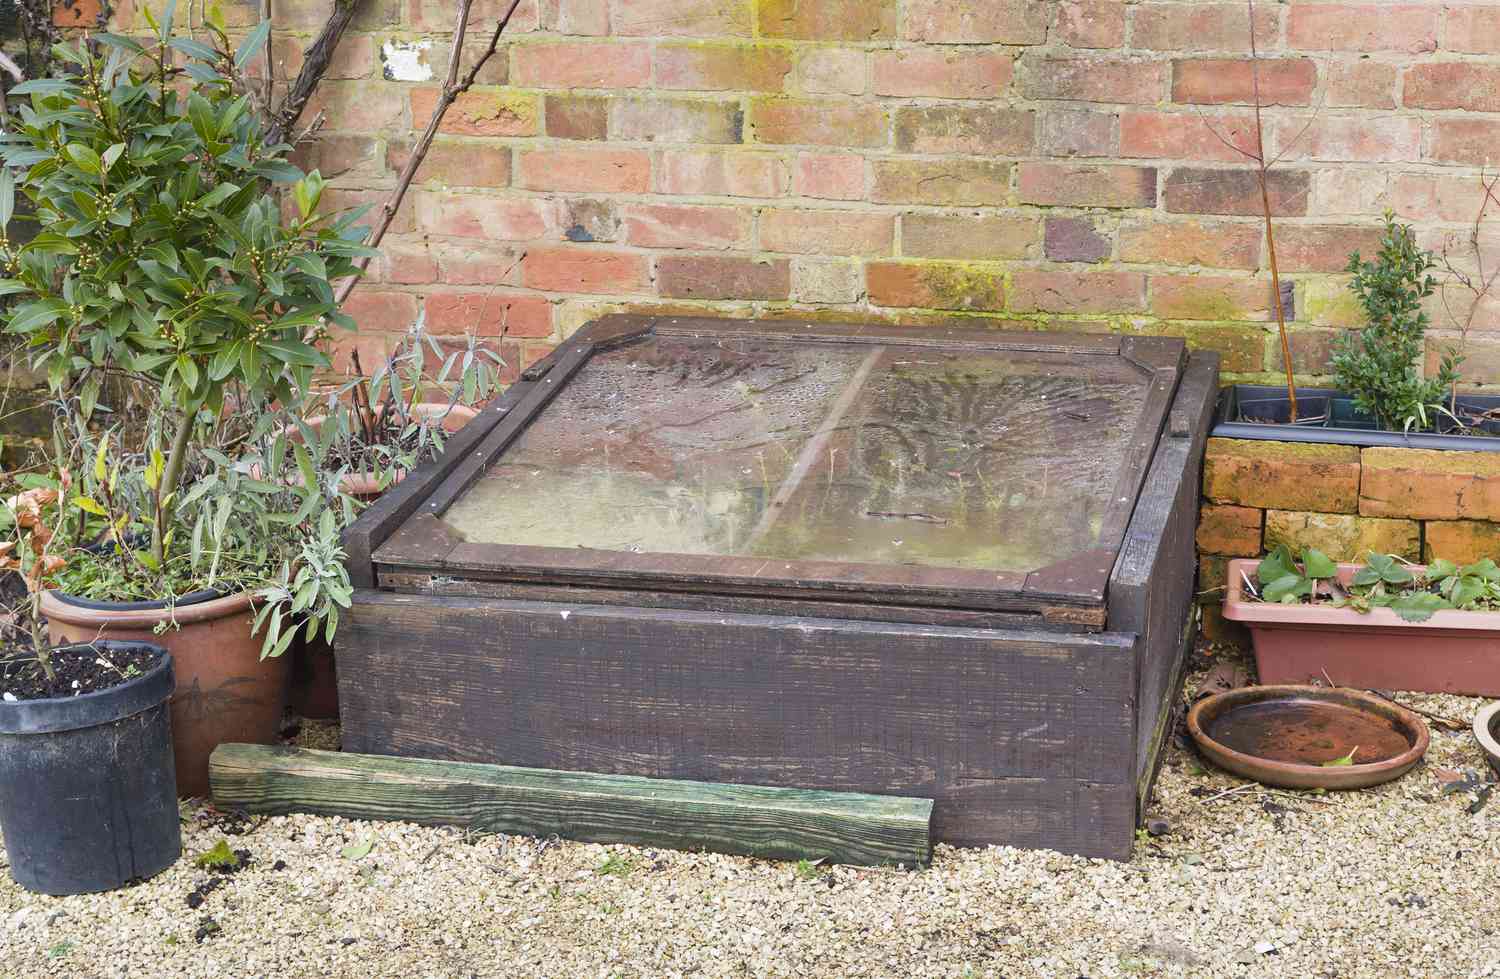 Un cadre froid fermé avec condensation dans un jardin anglais.